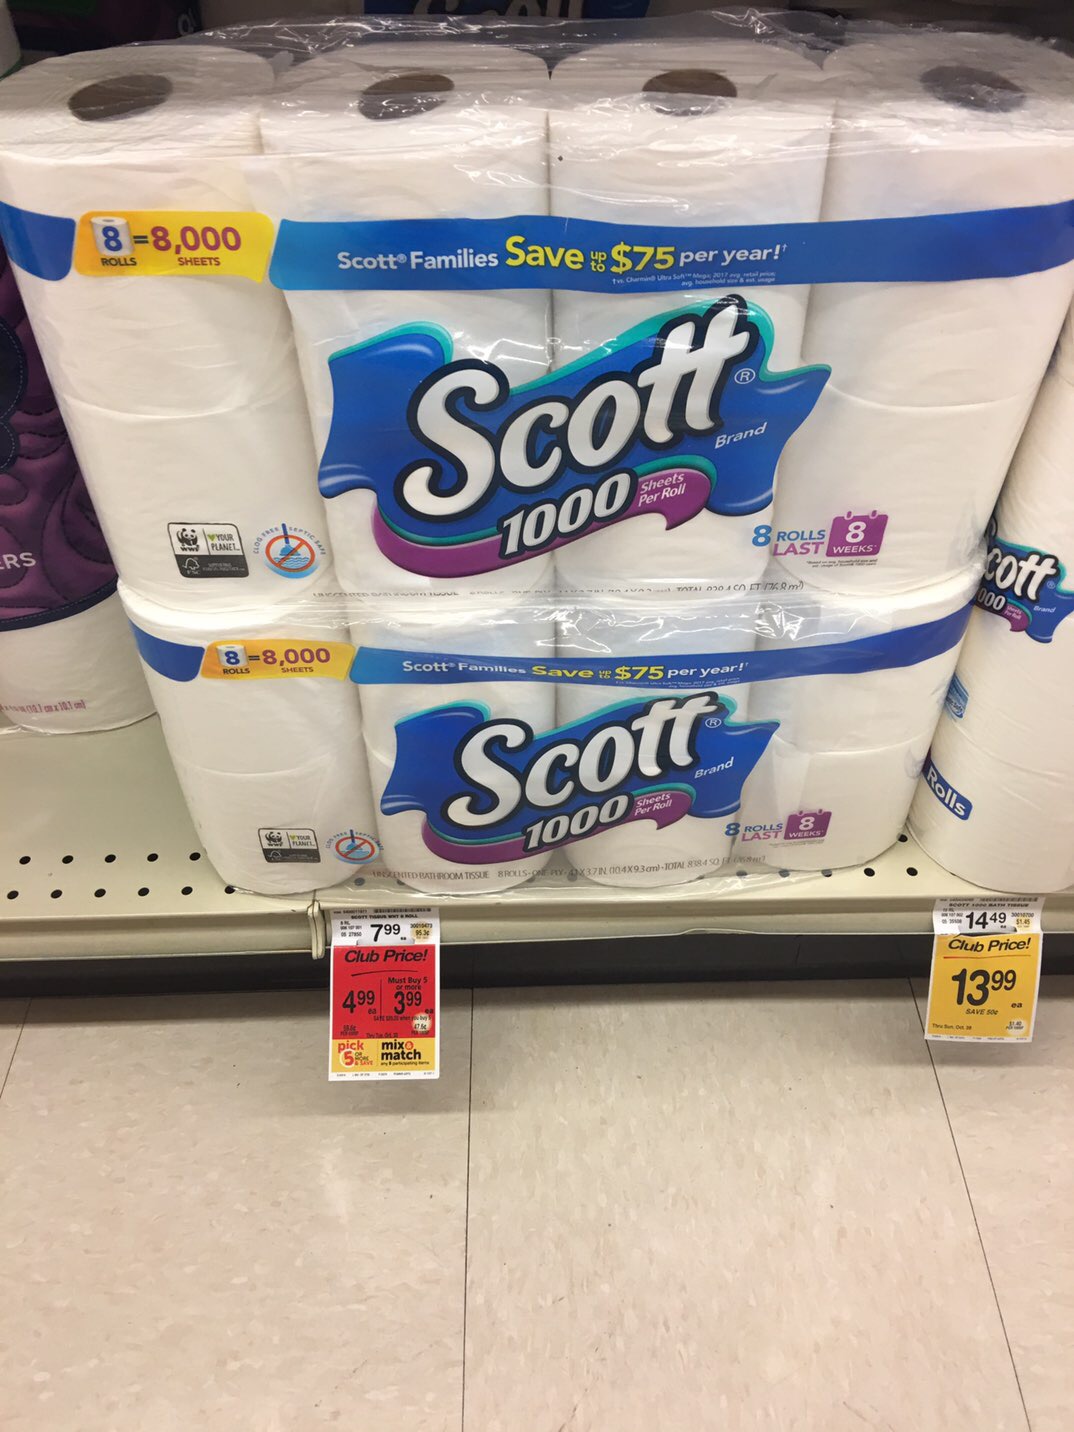 Scott bath tissue